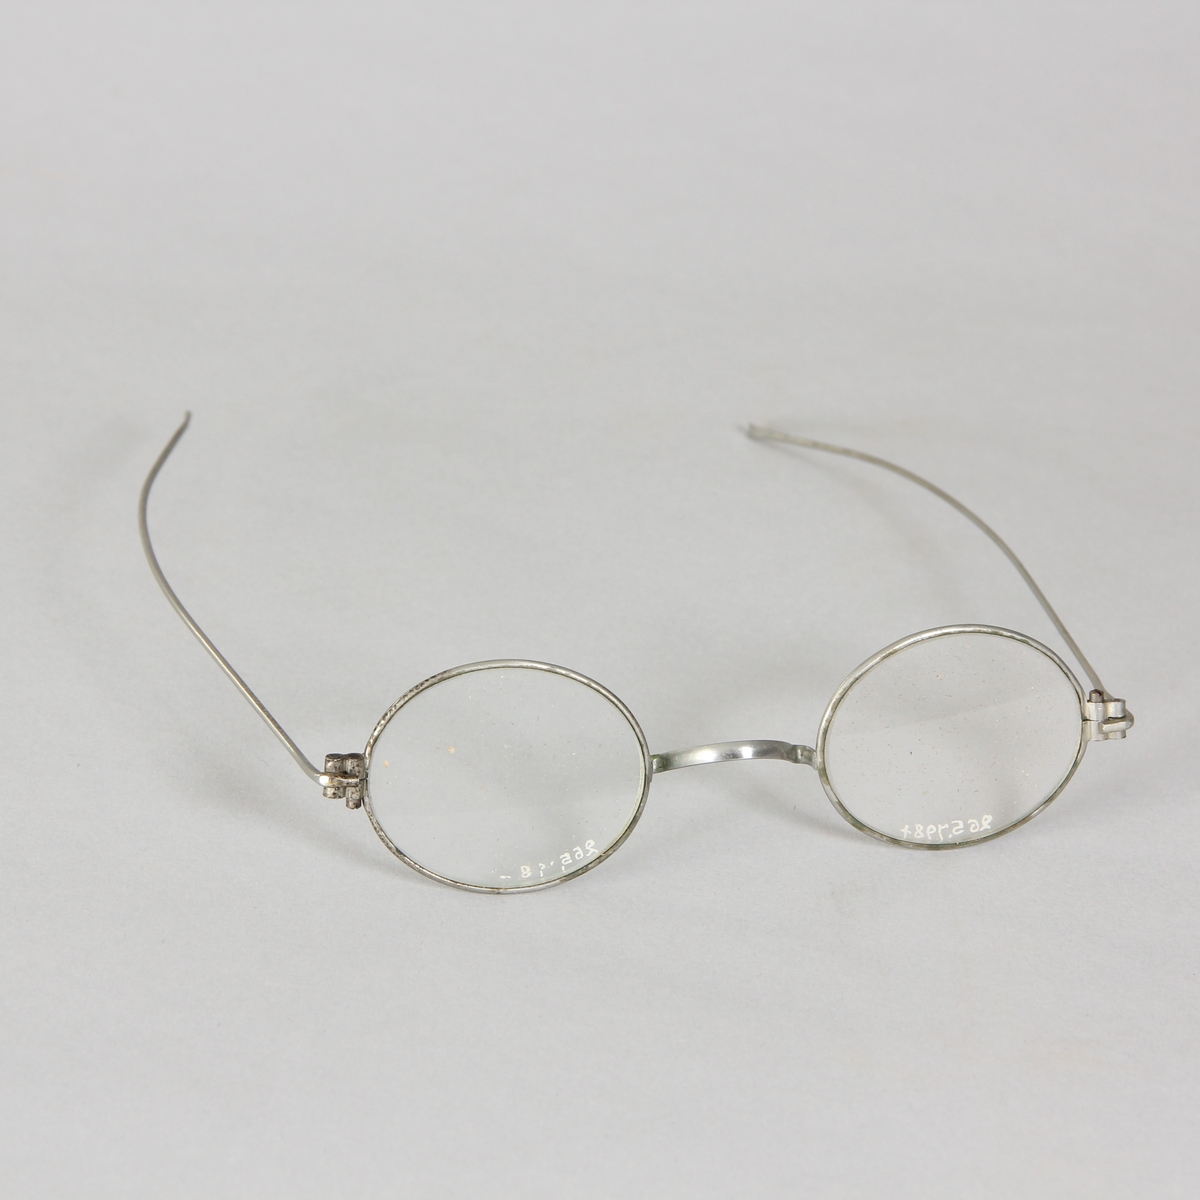 Glasögon, 1 par, med ovala glas och tunna vitmetallskalmar. Avlångt fodral av papp med rundade hörn, delbart.